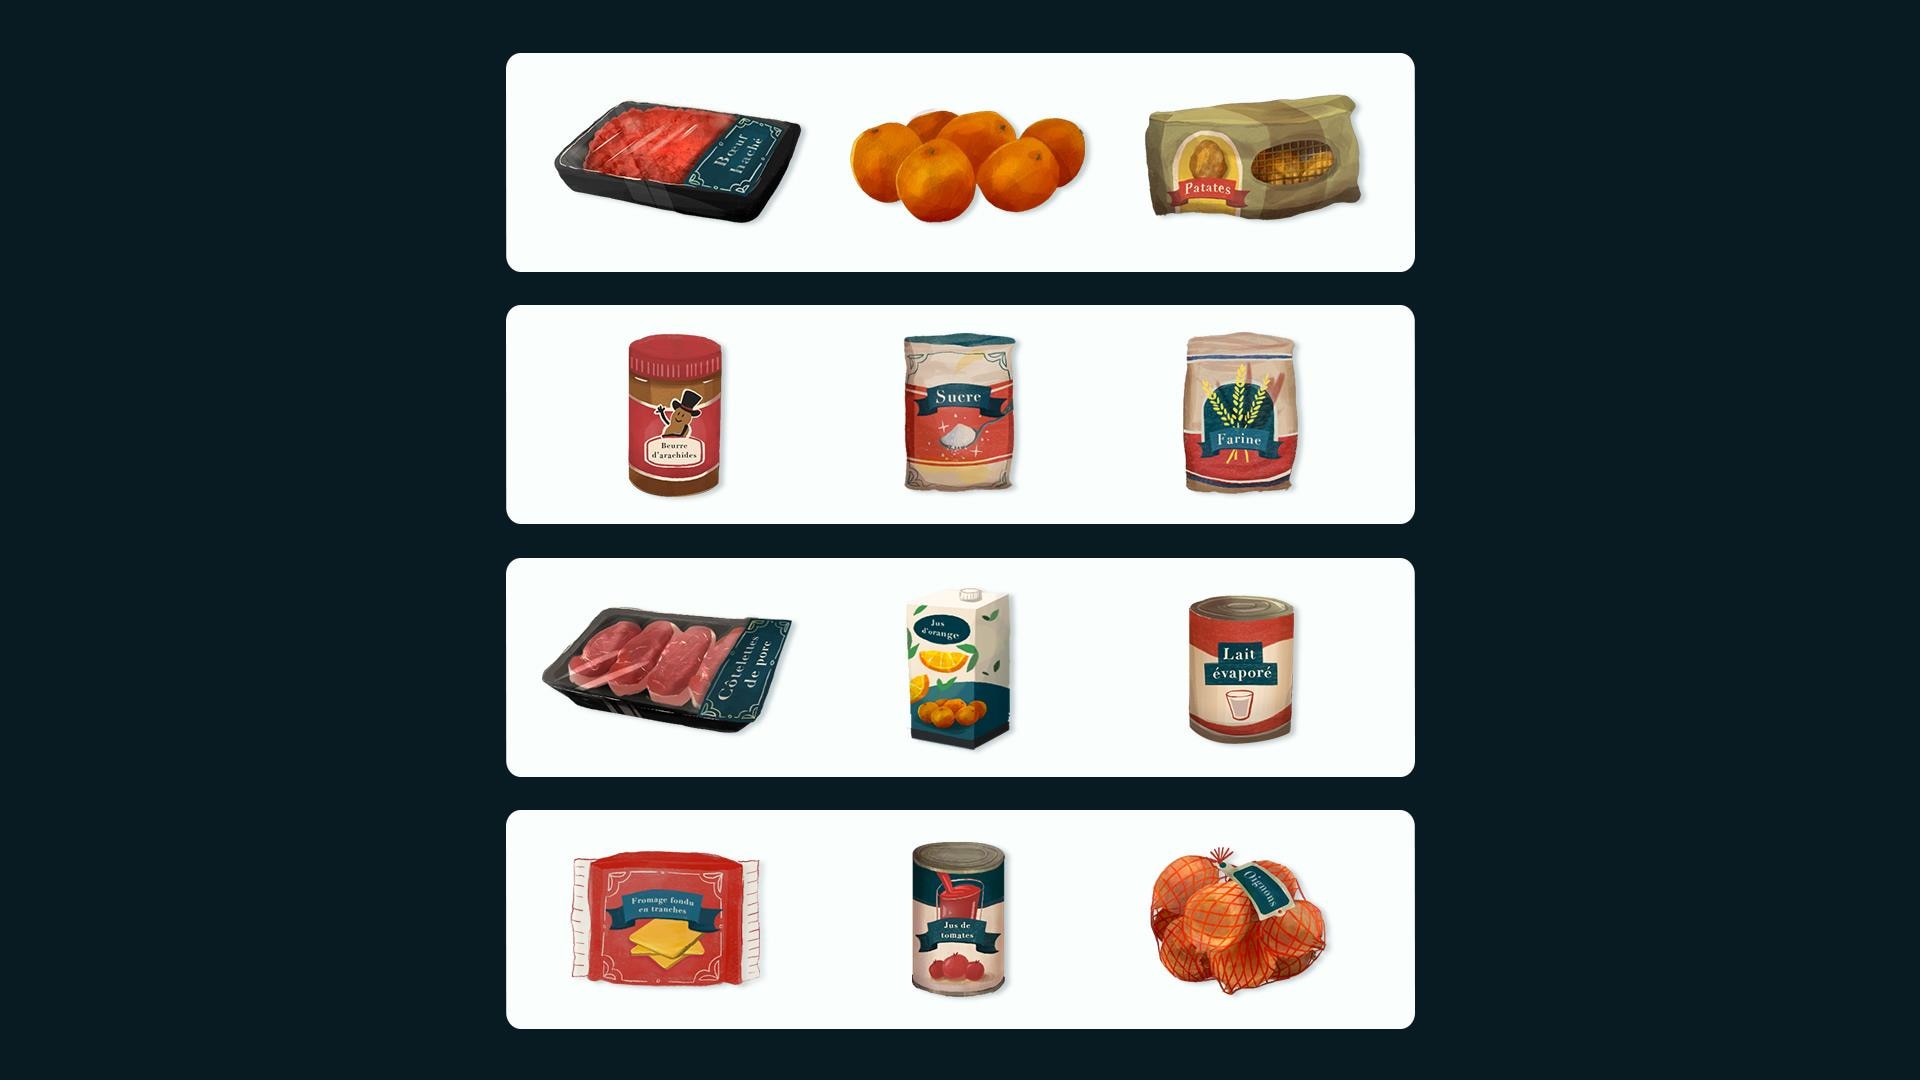 Une série d’illustrations présentant les différents aliments nommés dans la question.